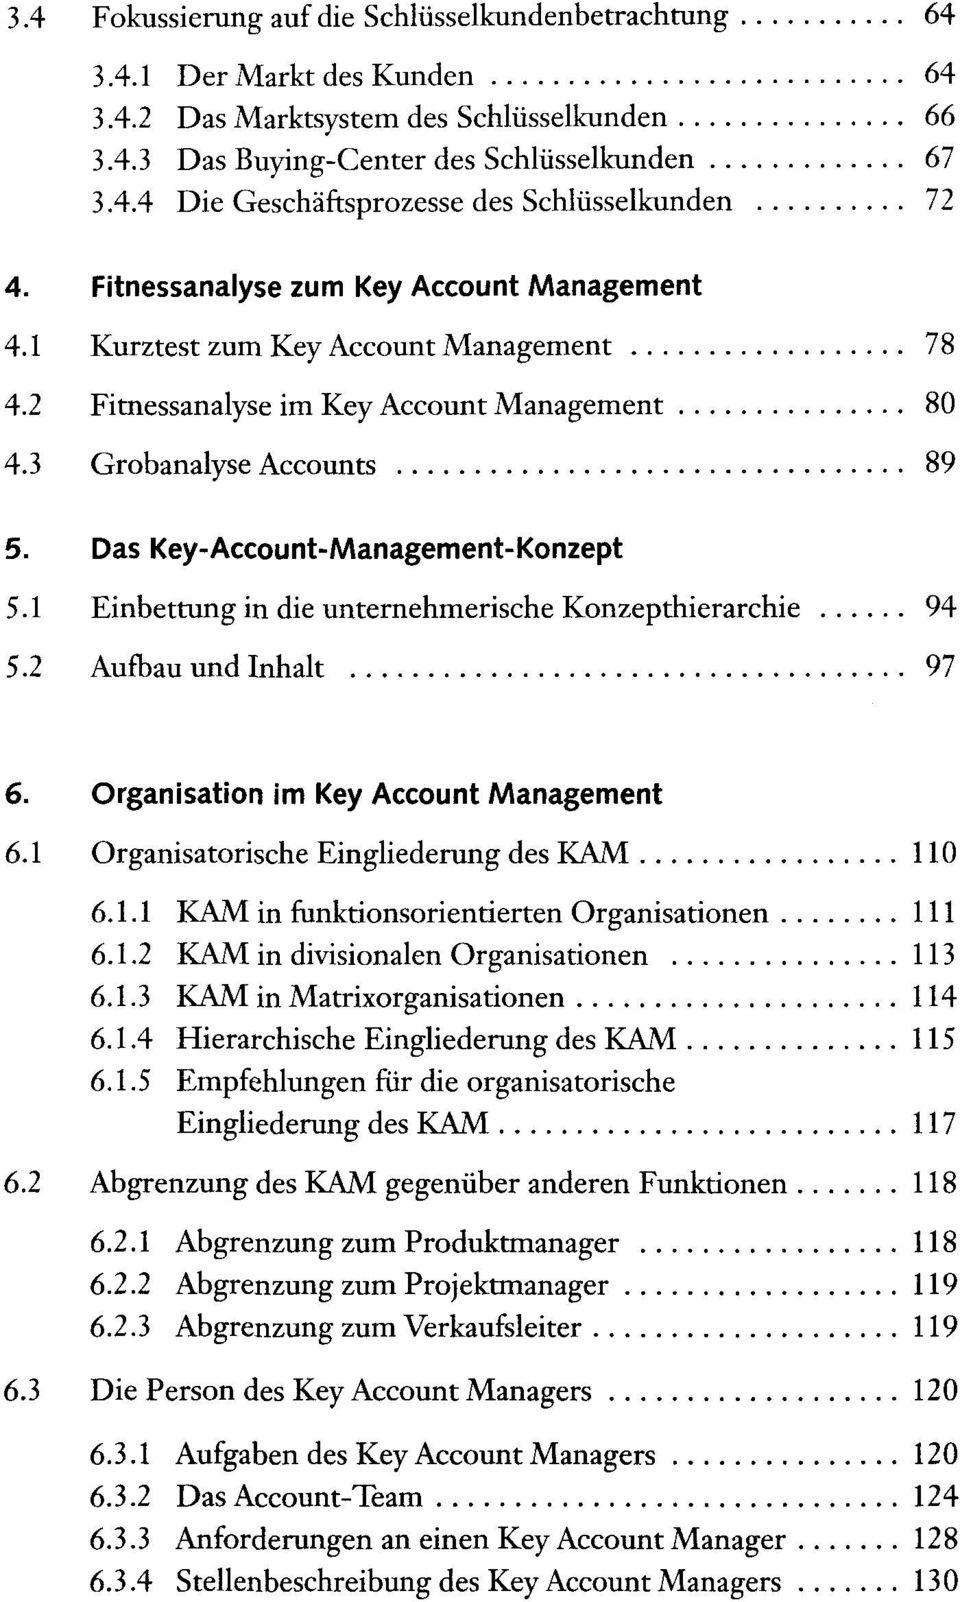 1 Einbettung in die unternehmerische Konzepthierarchie 94 5.2 Aufbau und Inhalt 97 6. Organisation im Key Account Management 6.1 Organisatorische Eingliederung des KAM 110 6.1.1 KAM in funktionsorientierten Organisationen 6.